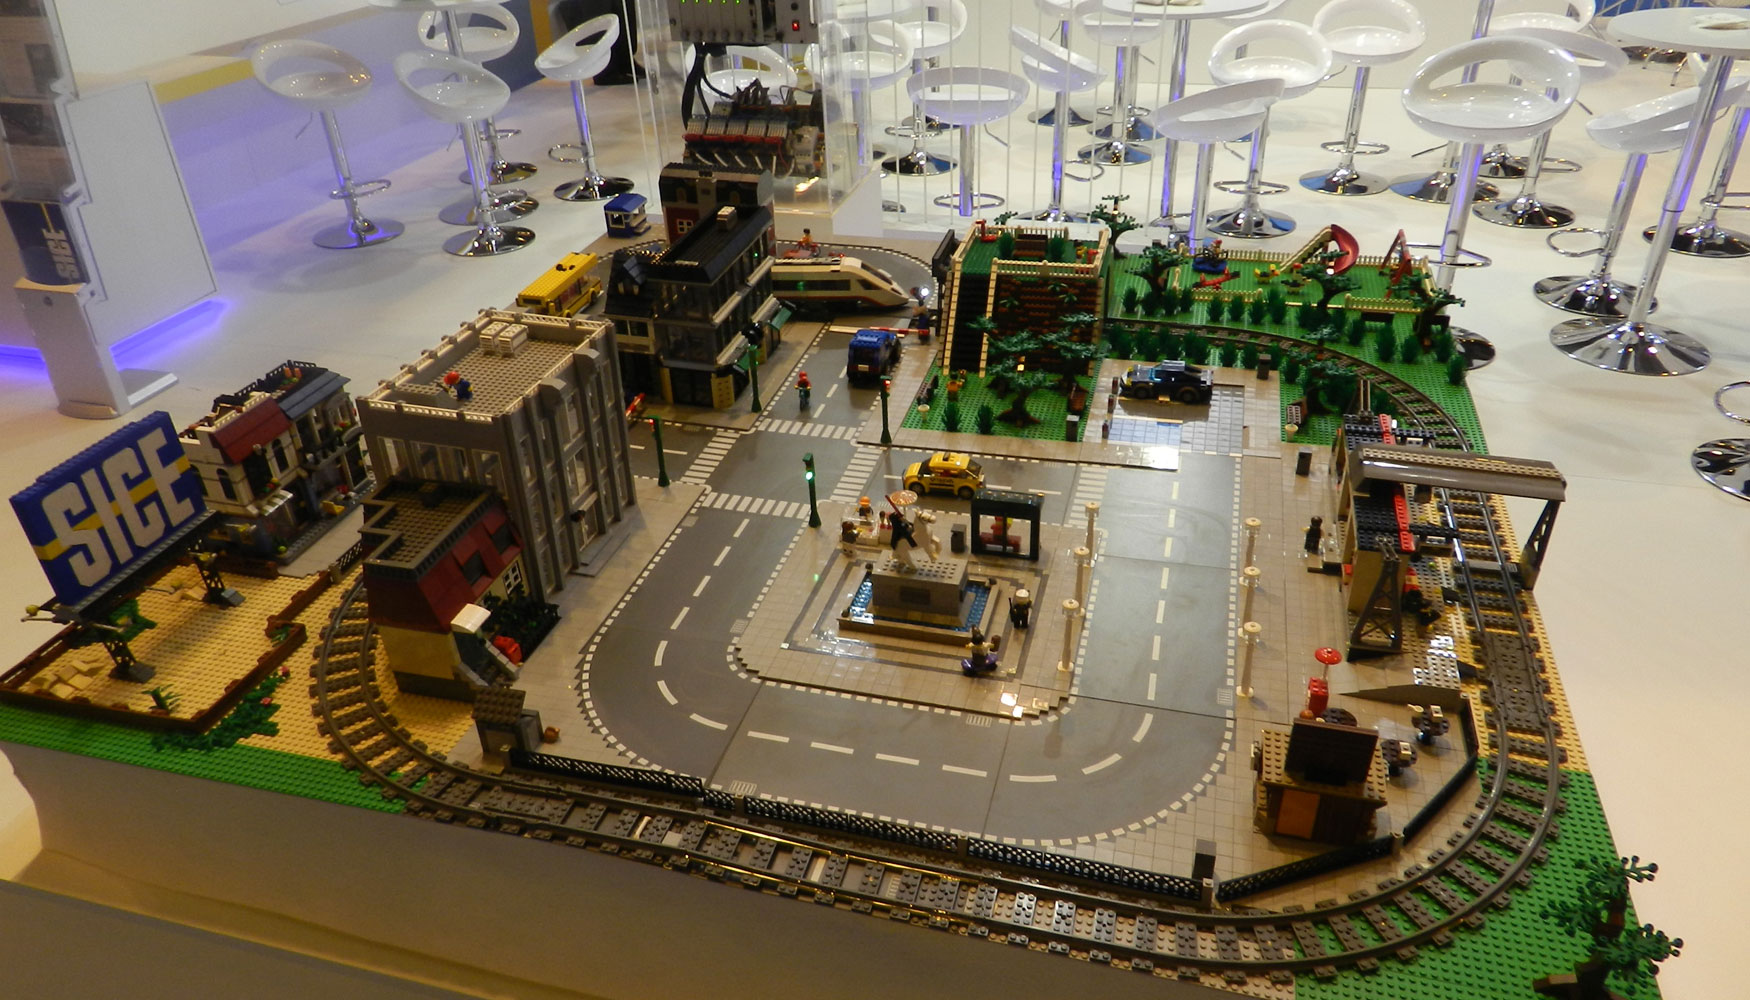 Maqueta de Lego expuesta por Sice en Trafic